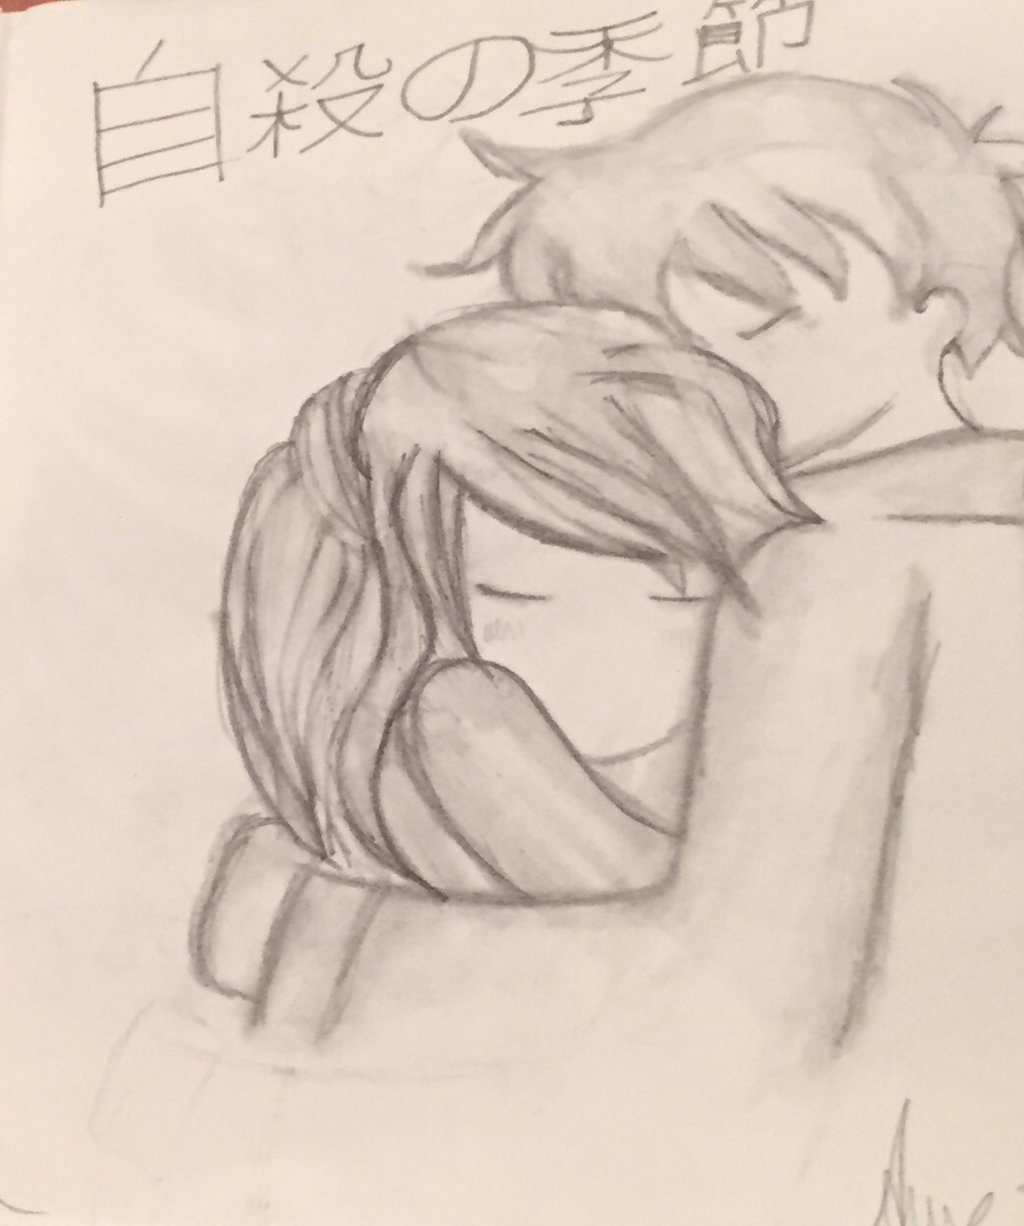 Boy And Girl Hugging Drawing Photo - Drawing Skill